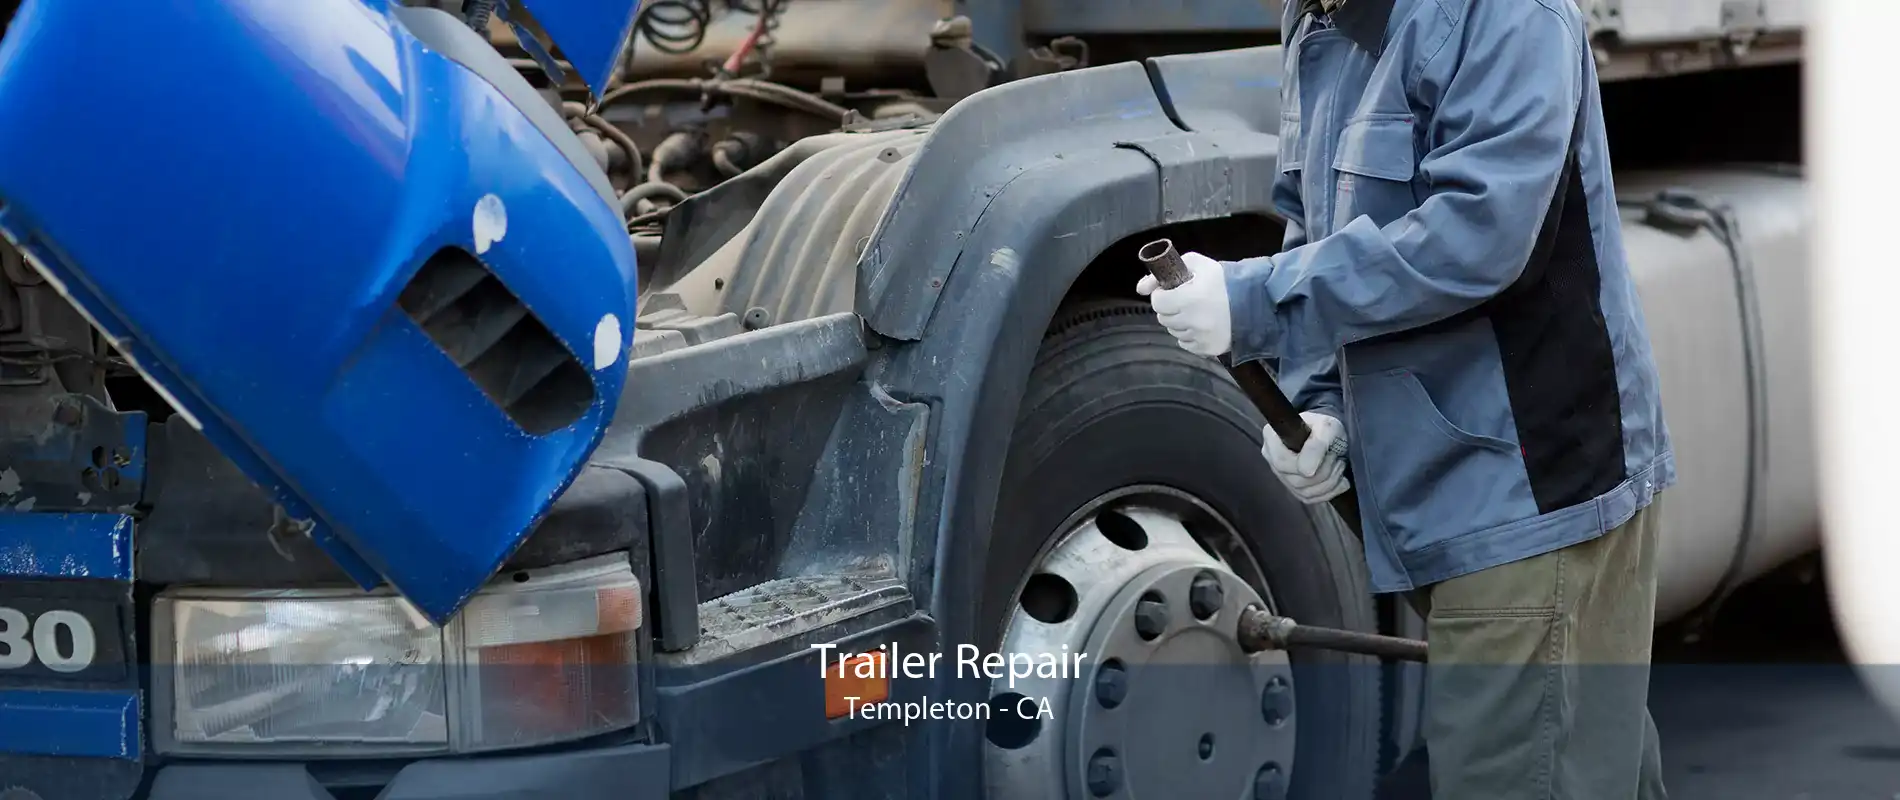 Trailer Repair Templeton - CA